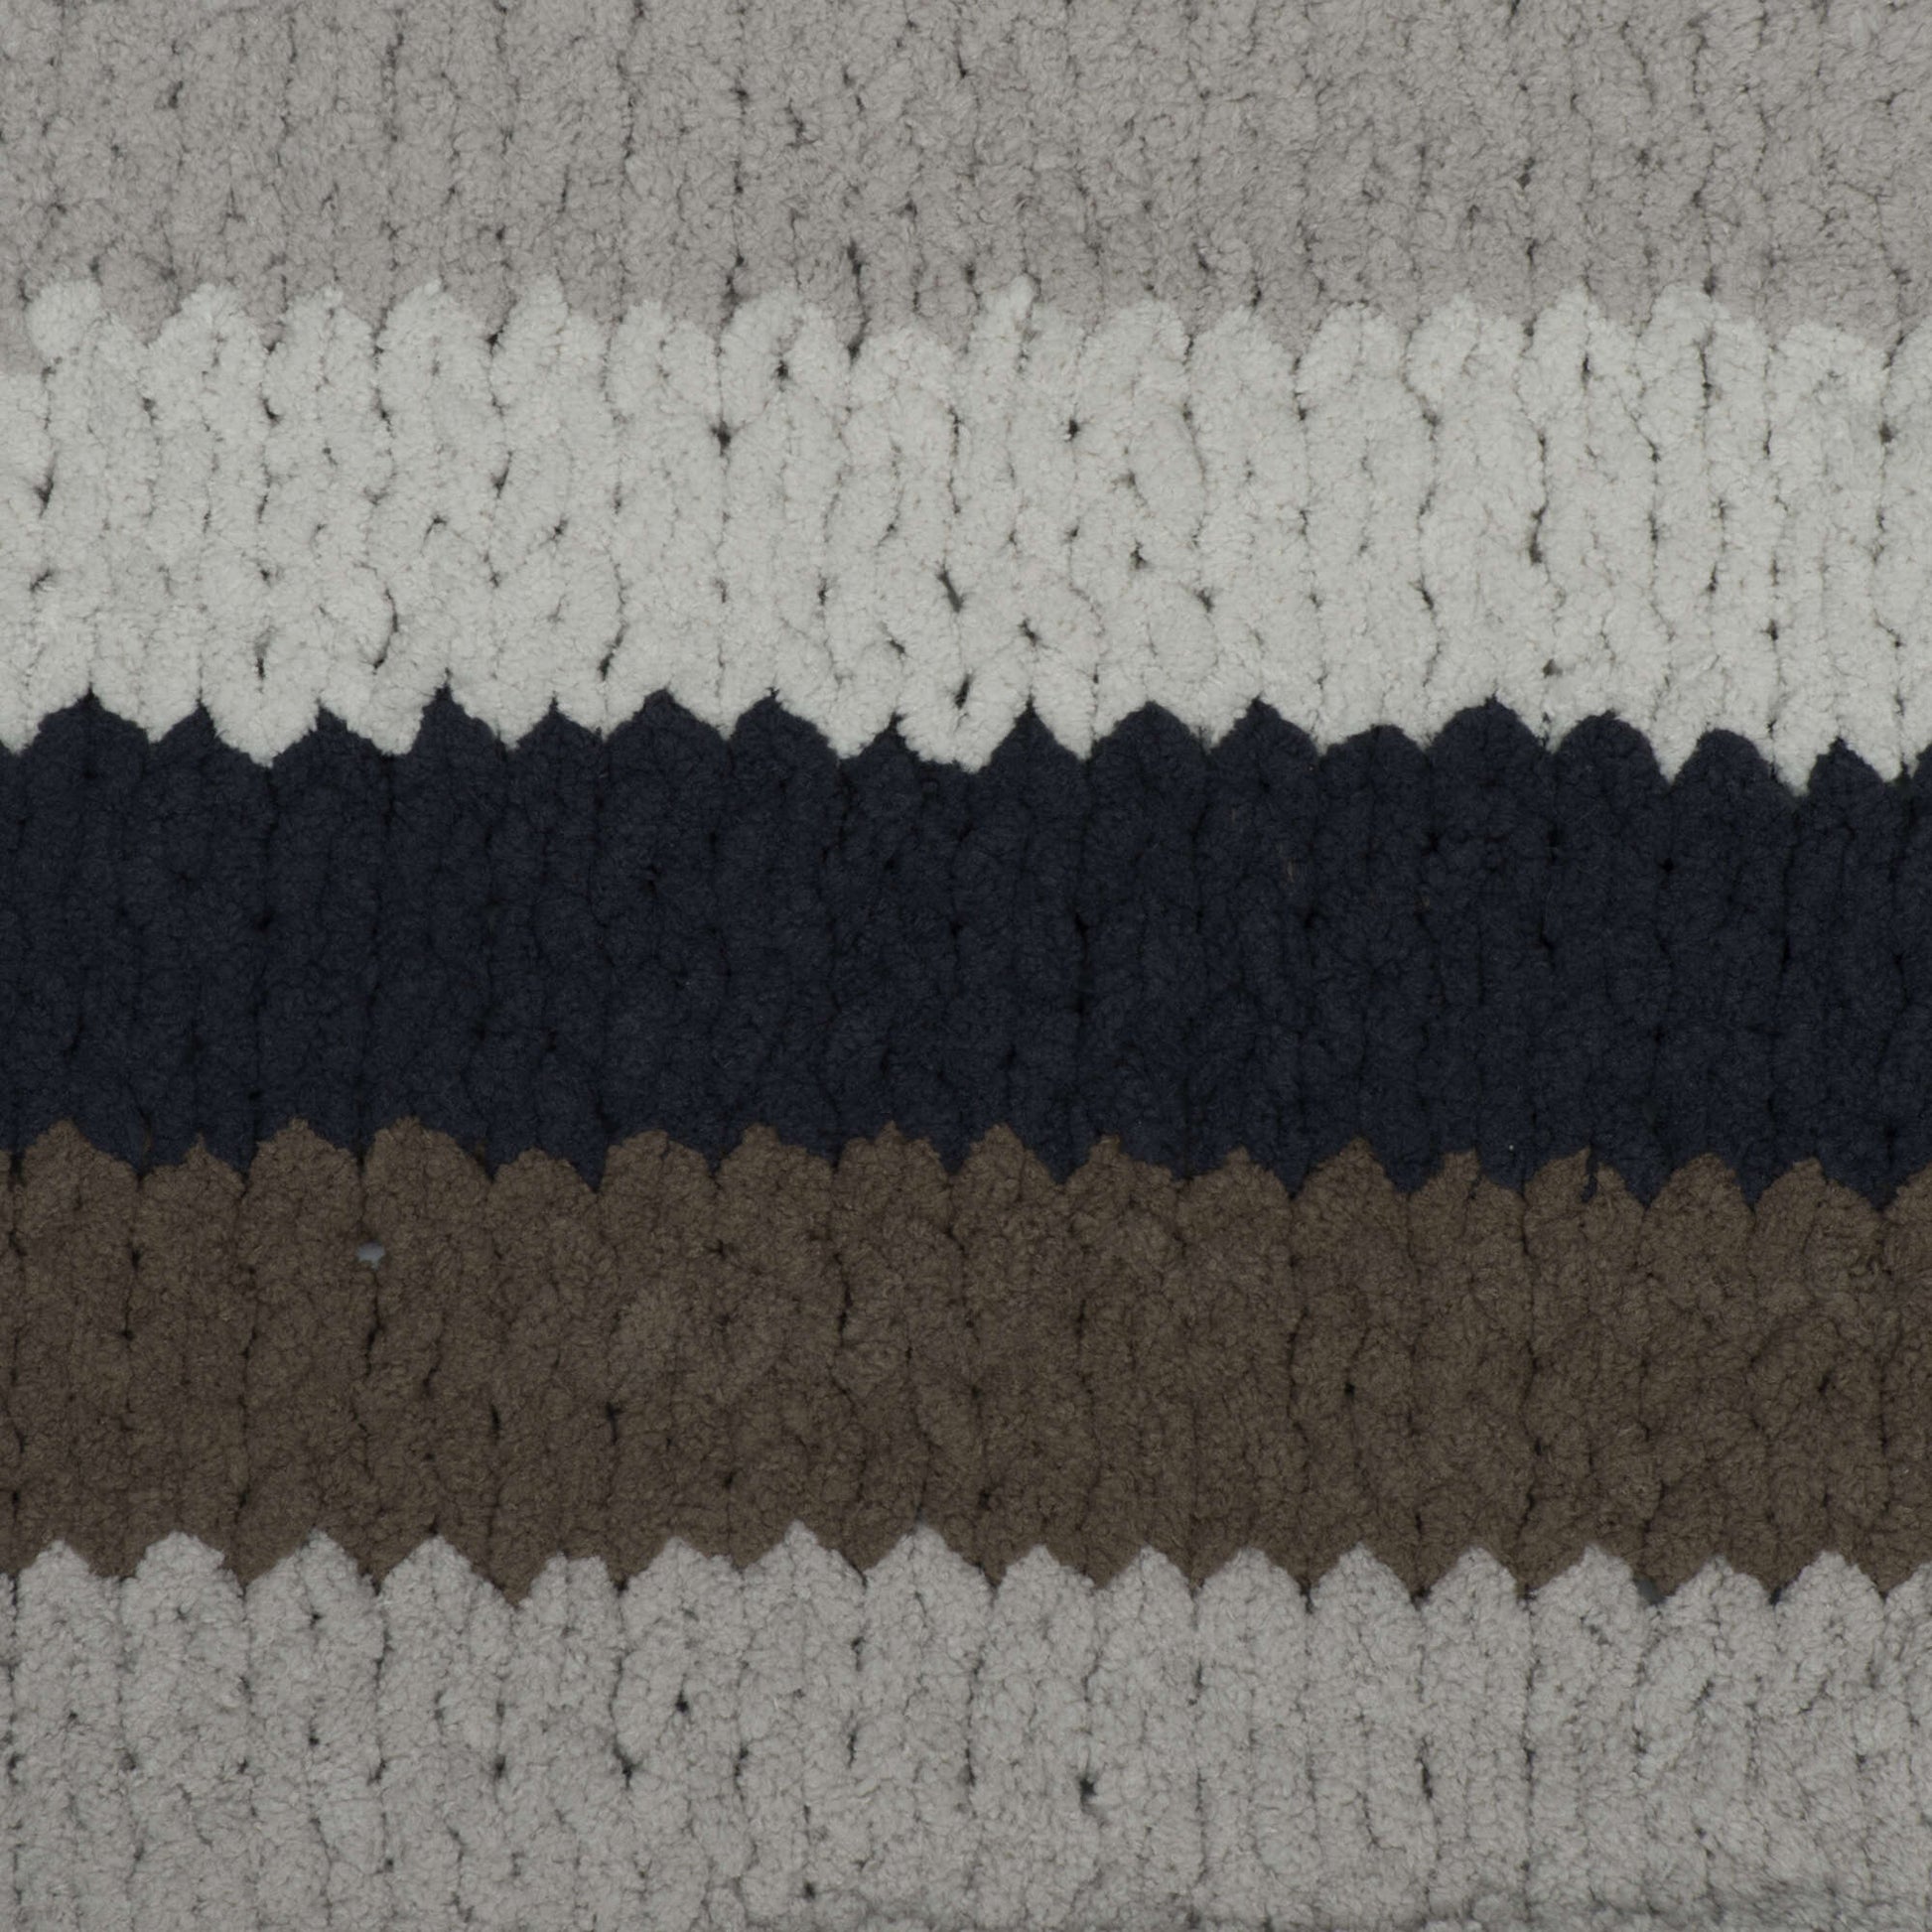 Bernat Blanket Stripes Gray Matters Yarn - 2 Pack of 300g/10.5oz -  Polyester - 6 Super Bulky - 220 Yards - Knitting/Crochet